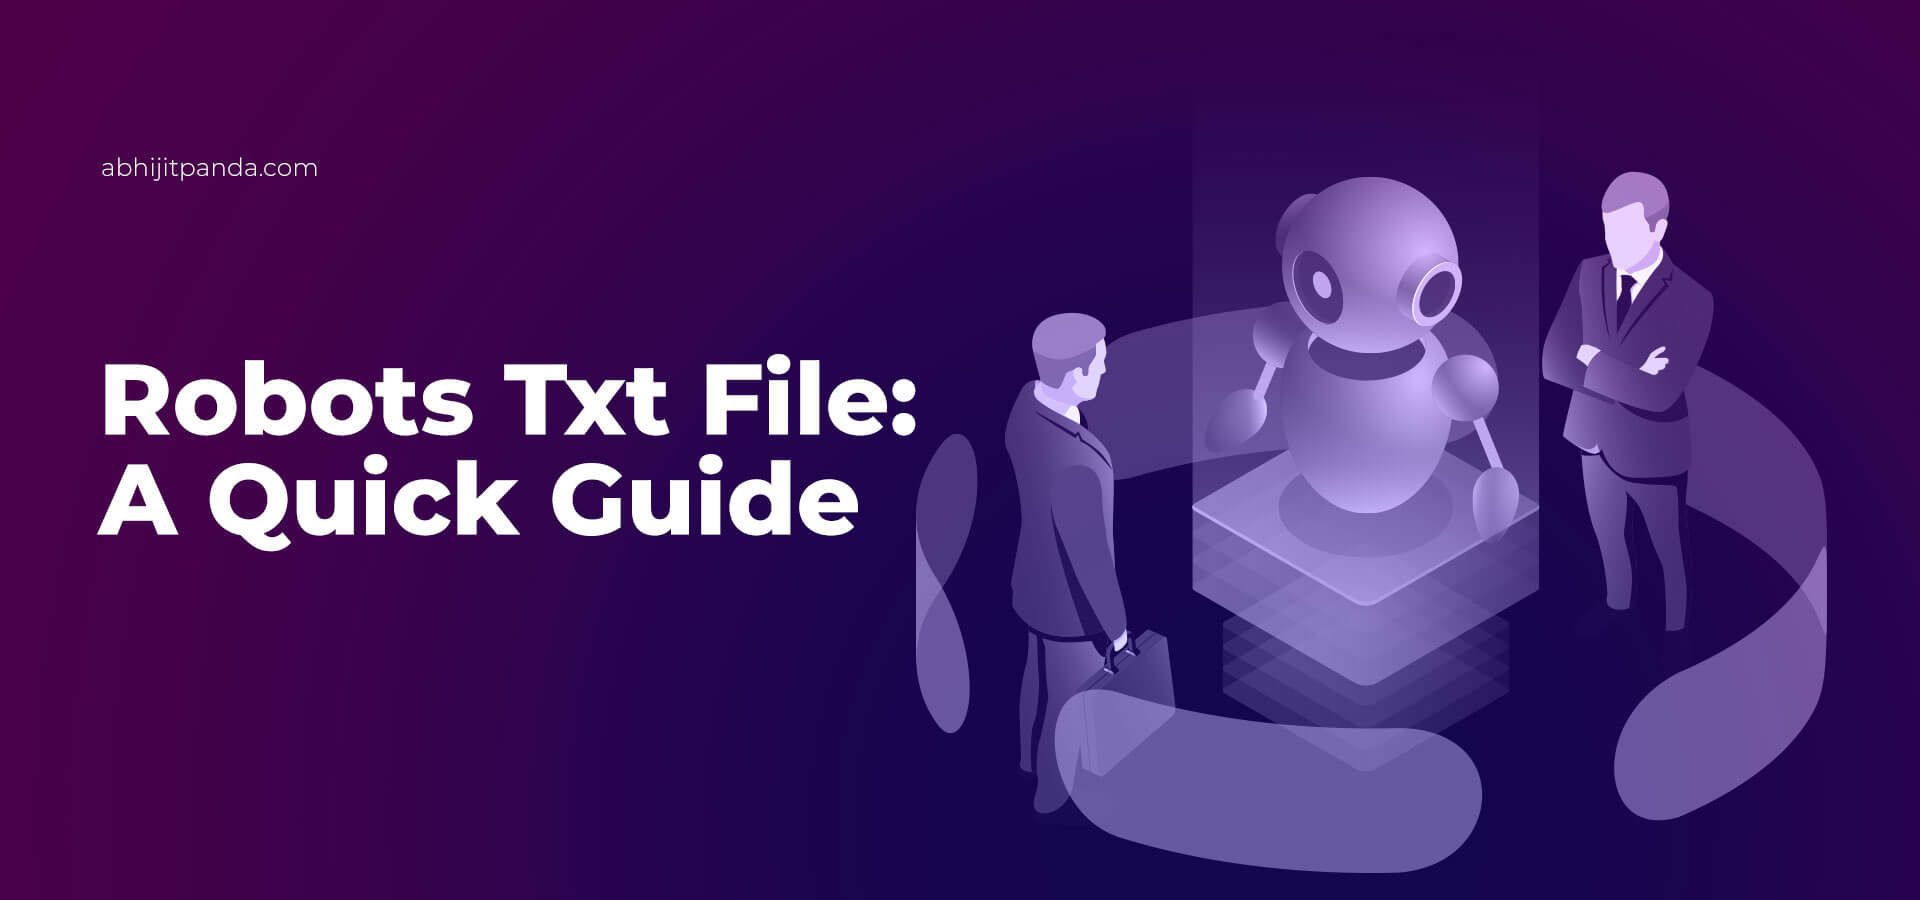 Robots Txt File Guide